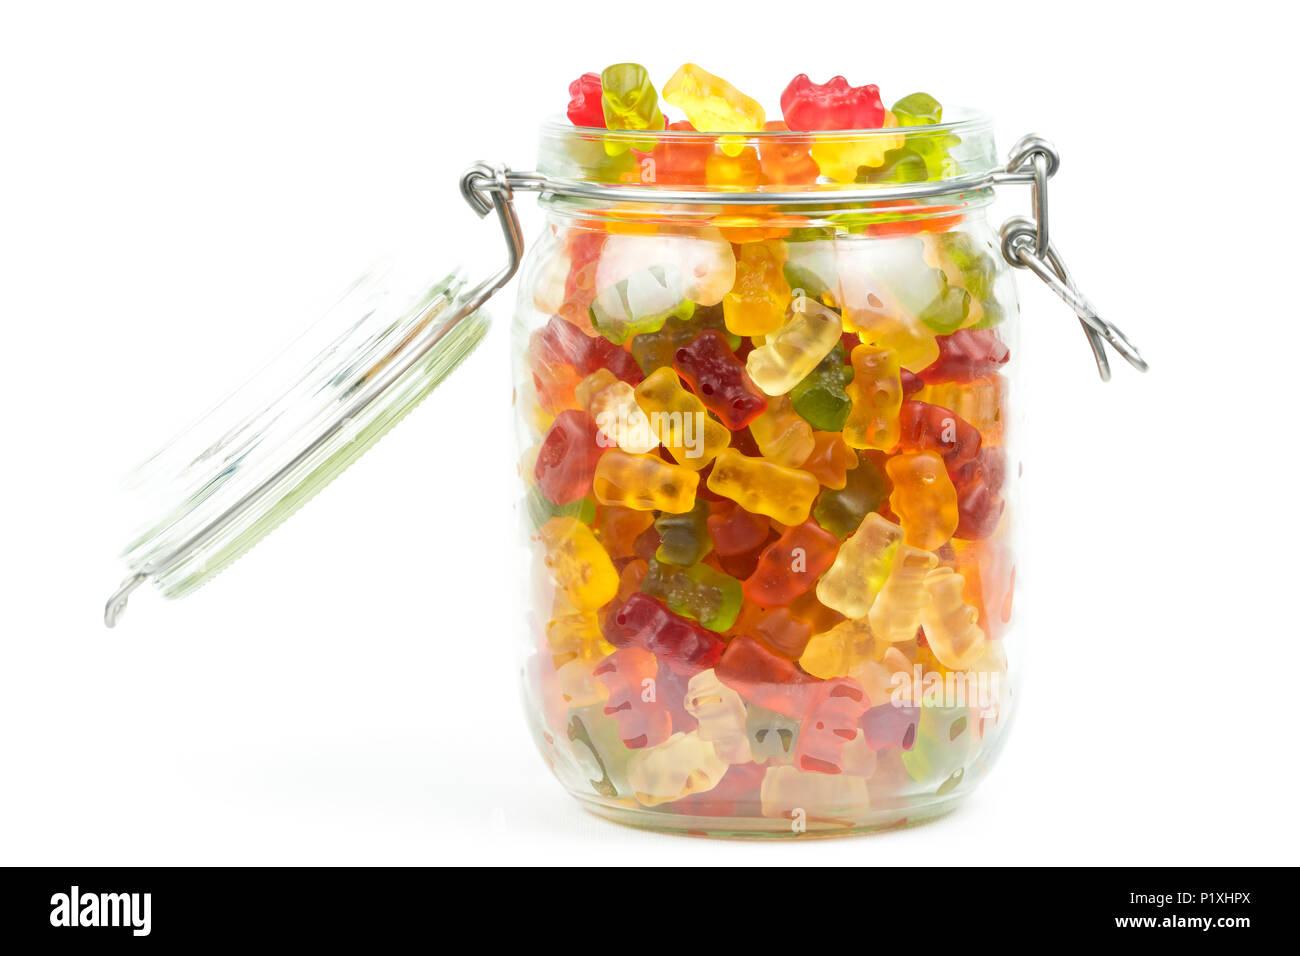 Ours gommeux colorés / jelly baby candy bonbons dans un bocal en verre sur un fond blanc Banque D'Images